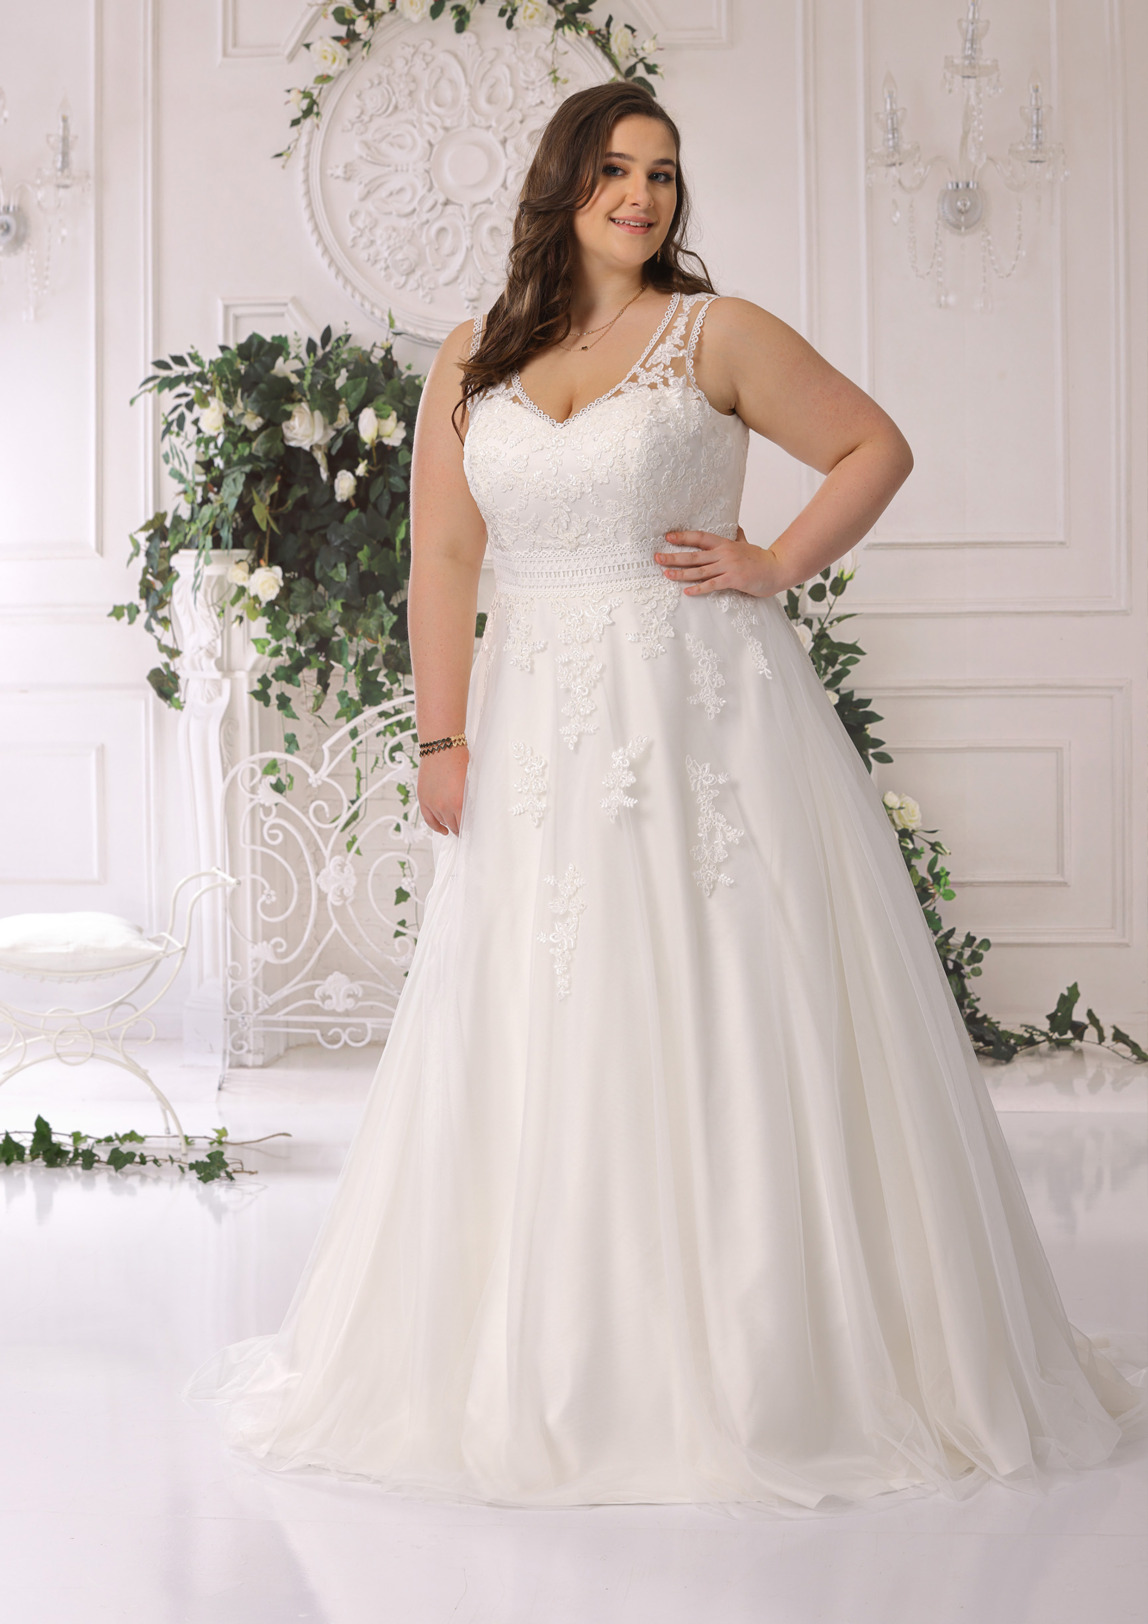 Brautkleid Hochzeitskleid in A Linie für curvy grosse Grössen von Ladybird Modell LS722012 mit V Ausschnitt und breiten Trägern Spitzen Applikationen Bild 3